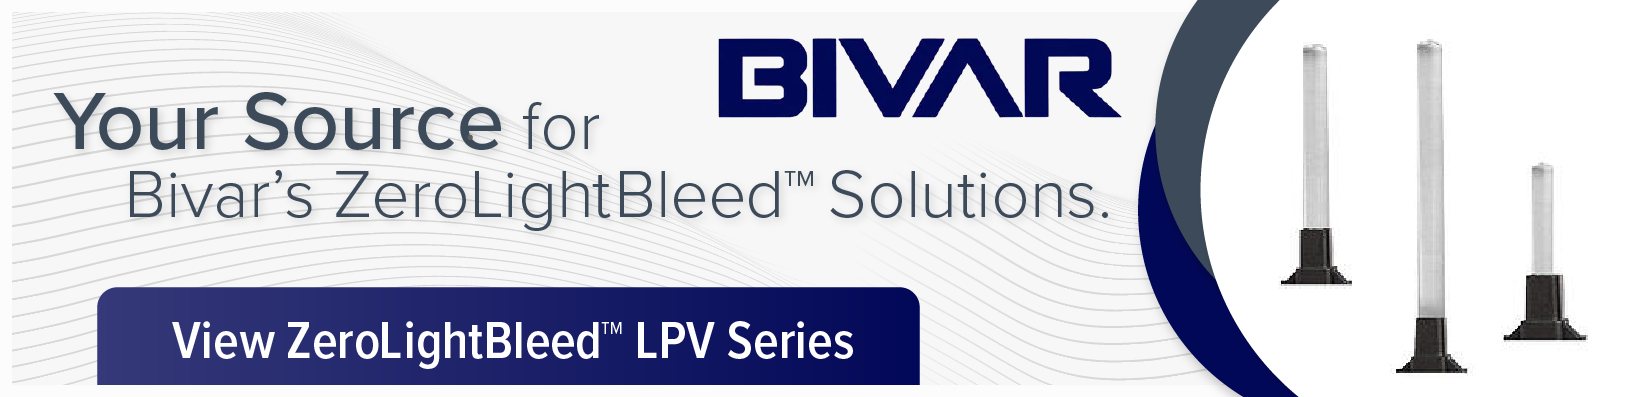 Bivar Zero Light Bleed Solutions Homepage Banner